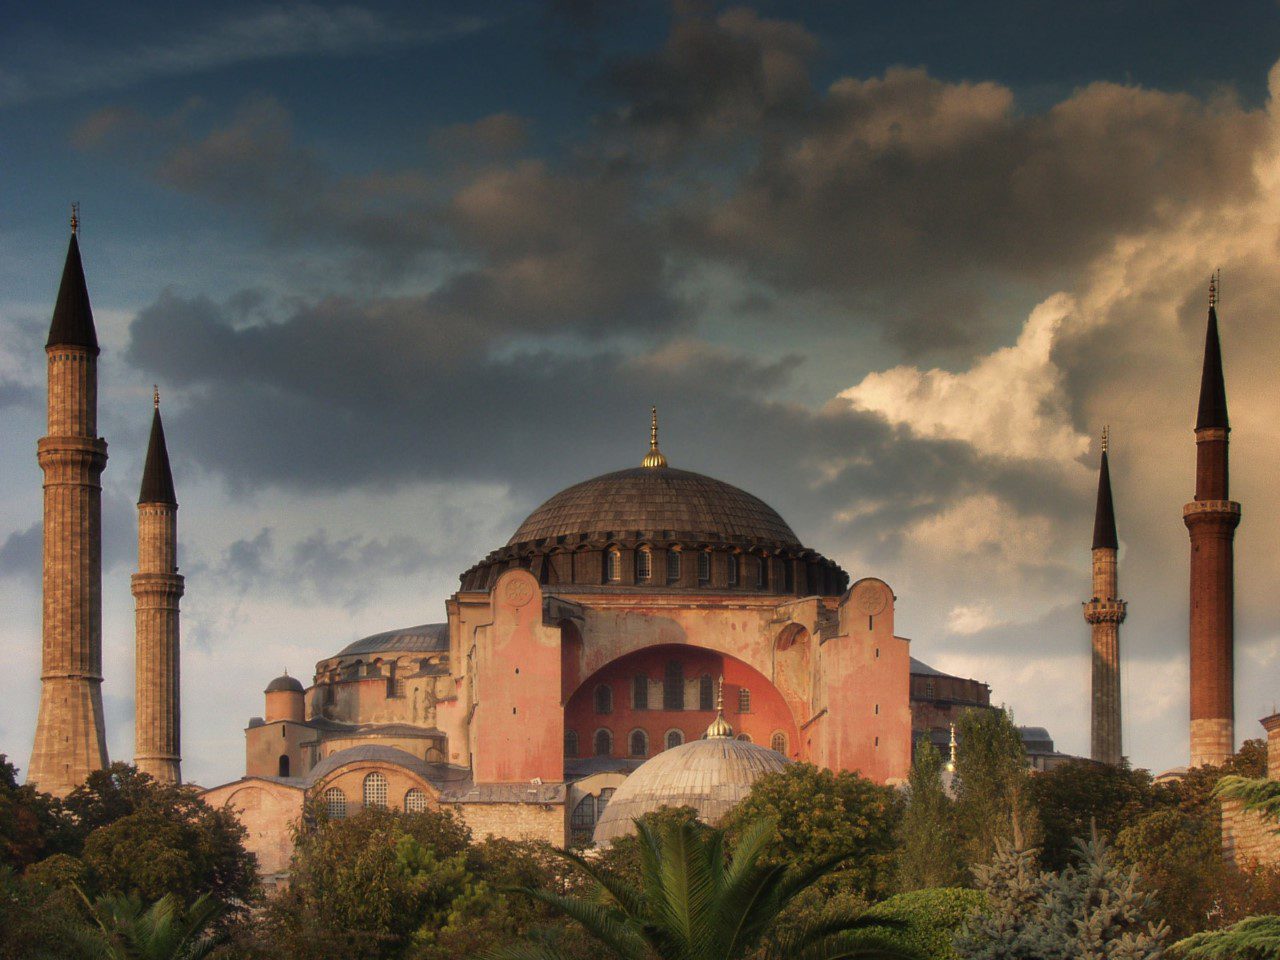 Hagia Sophia Grand Mosque: A Historic Icon